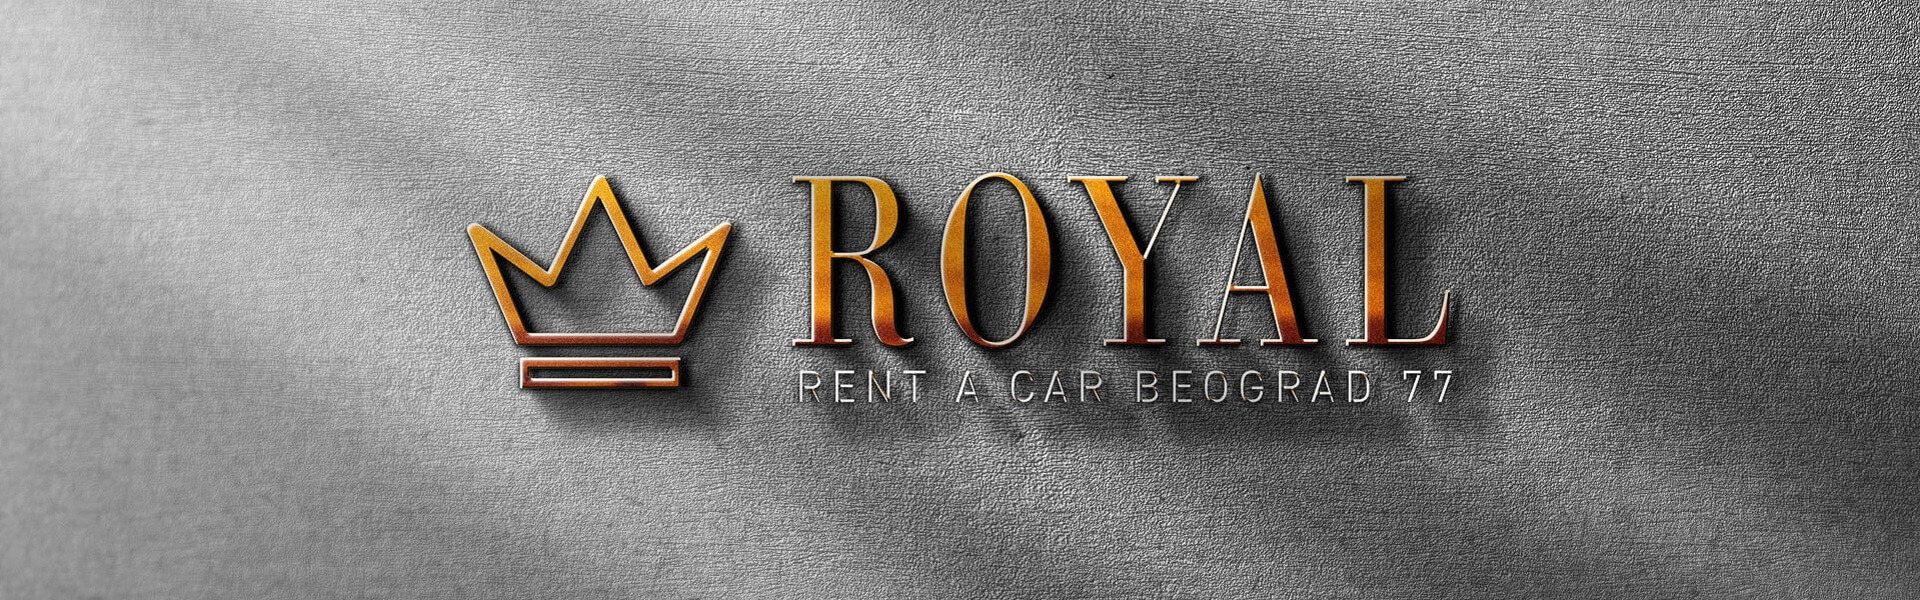 Renault delovi | Rent a car Beograd Royal